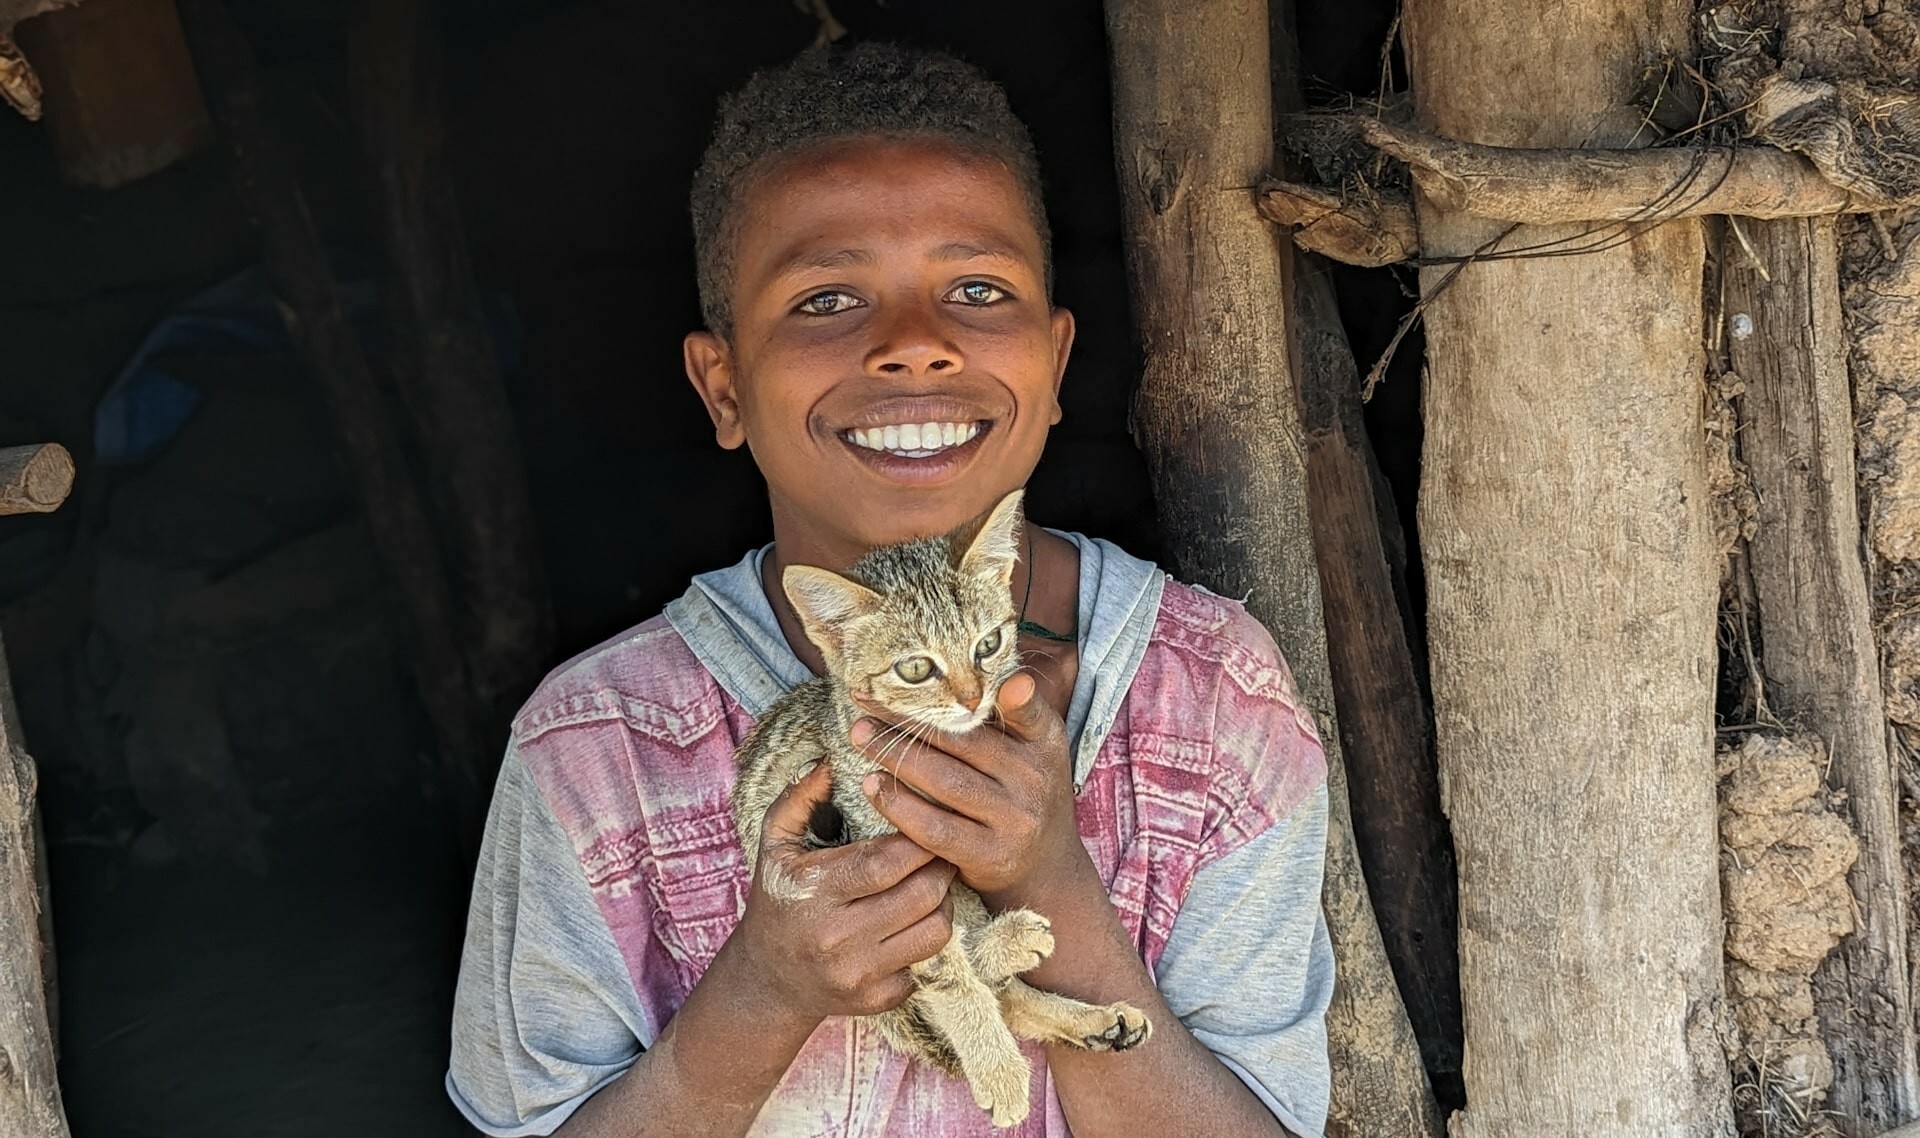 Hailemikael aus Fogera hält eine Katze_Titelbild Nagaya 1.24_Stiftung Menschen für Menschen